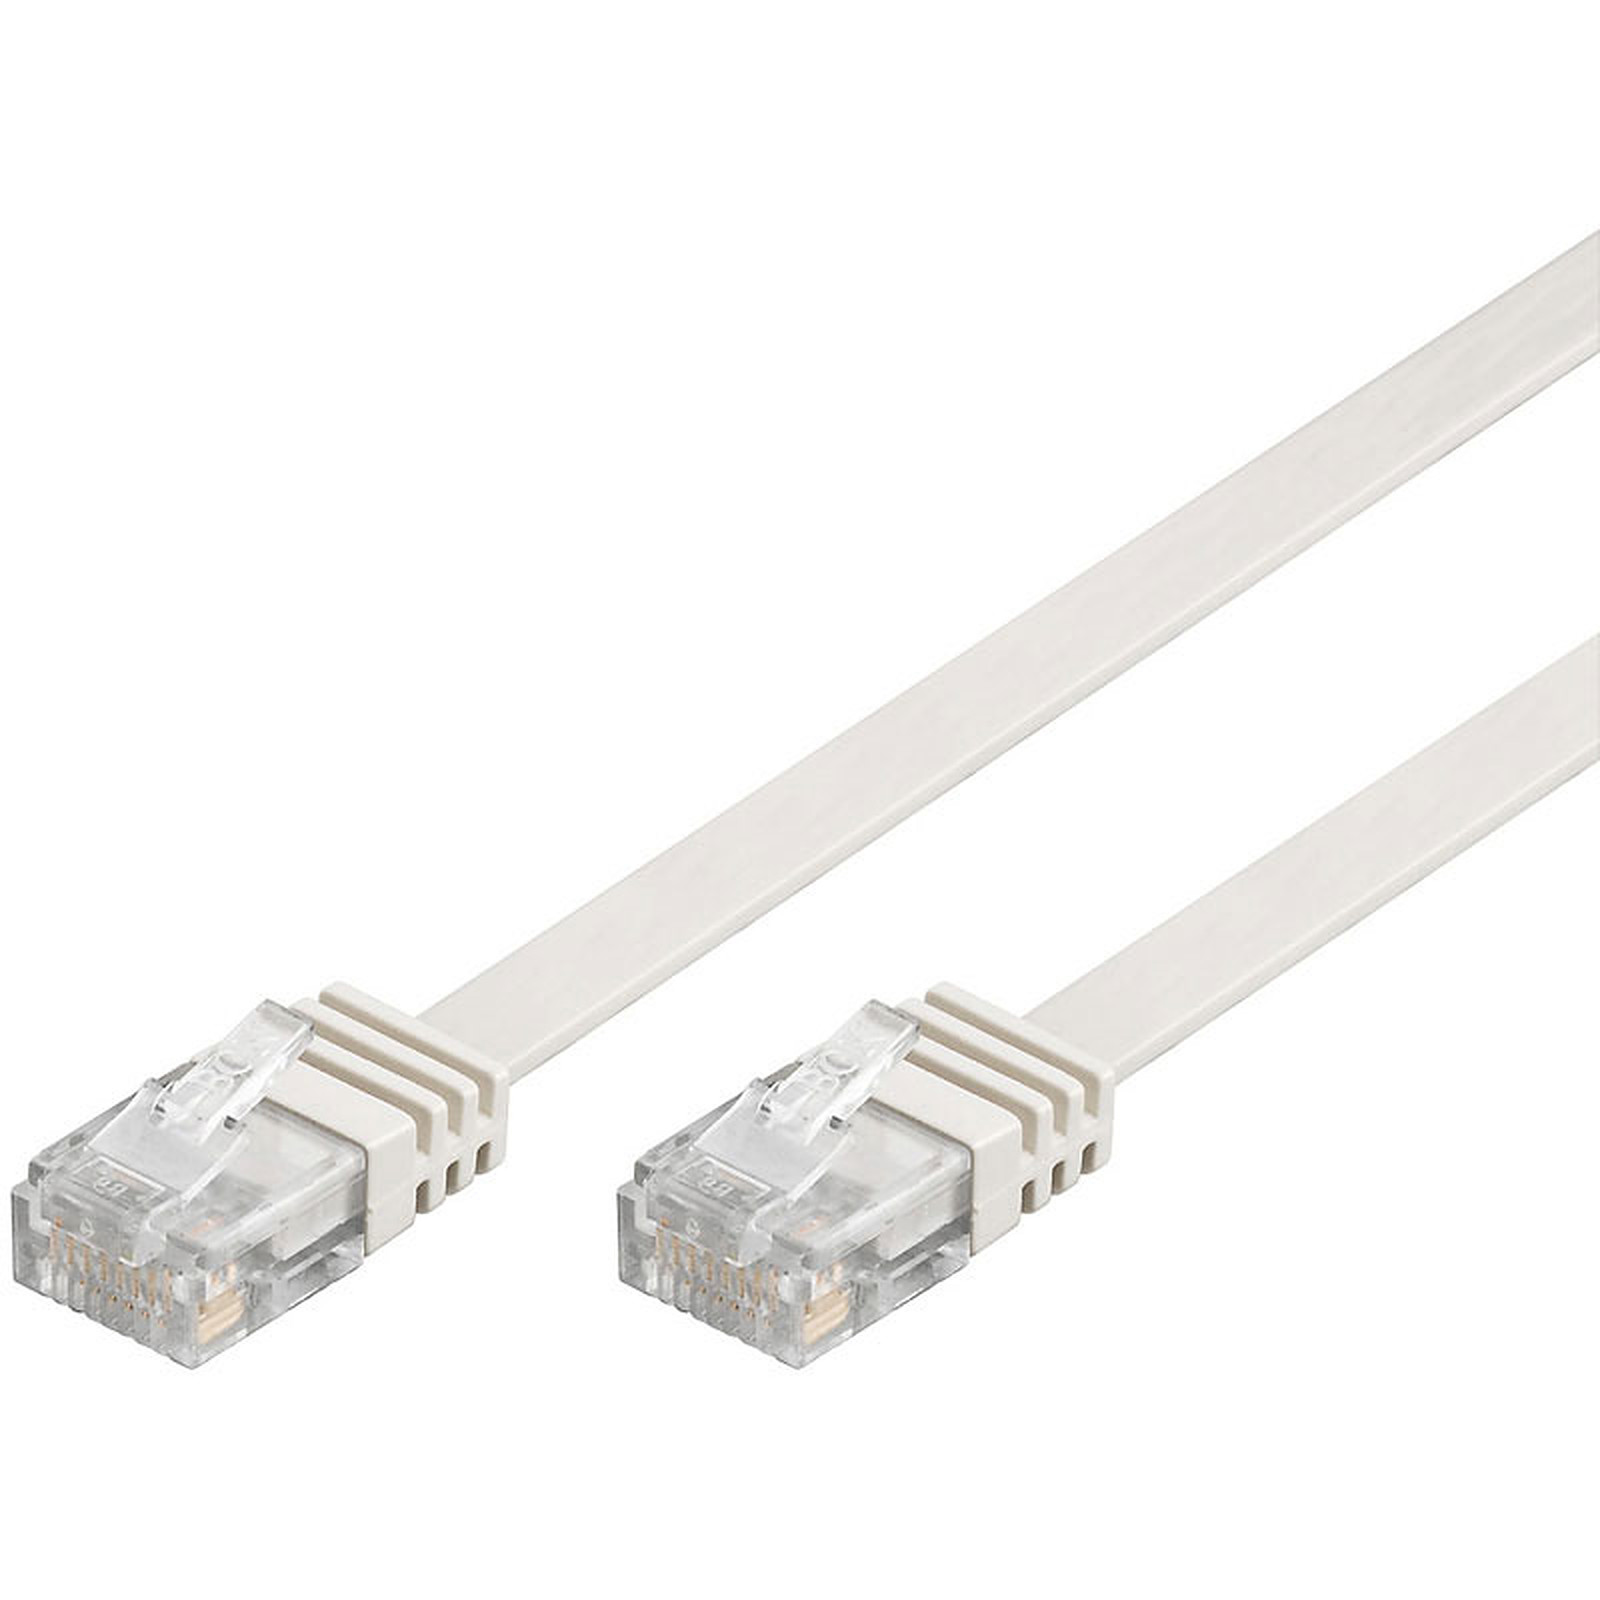 Cable RJ45 plat categorie 6 U/UTP 1 m (Blanc) - Cable RJ45 Generique